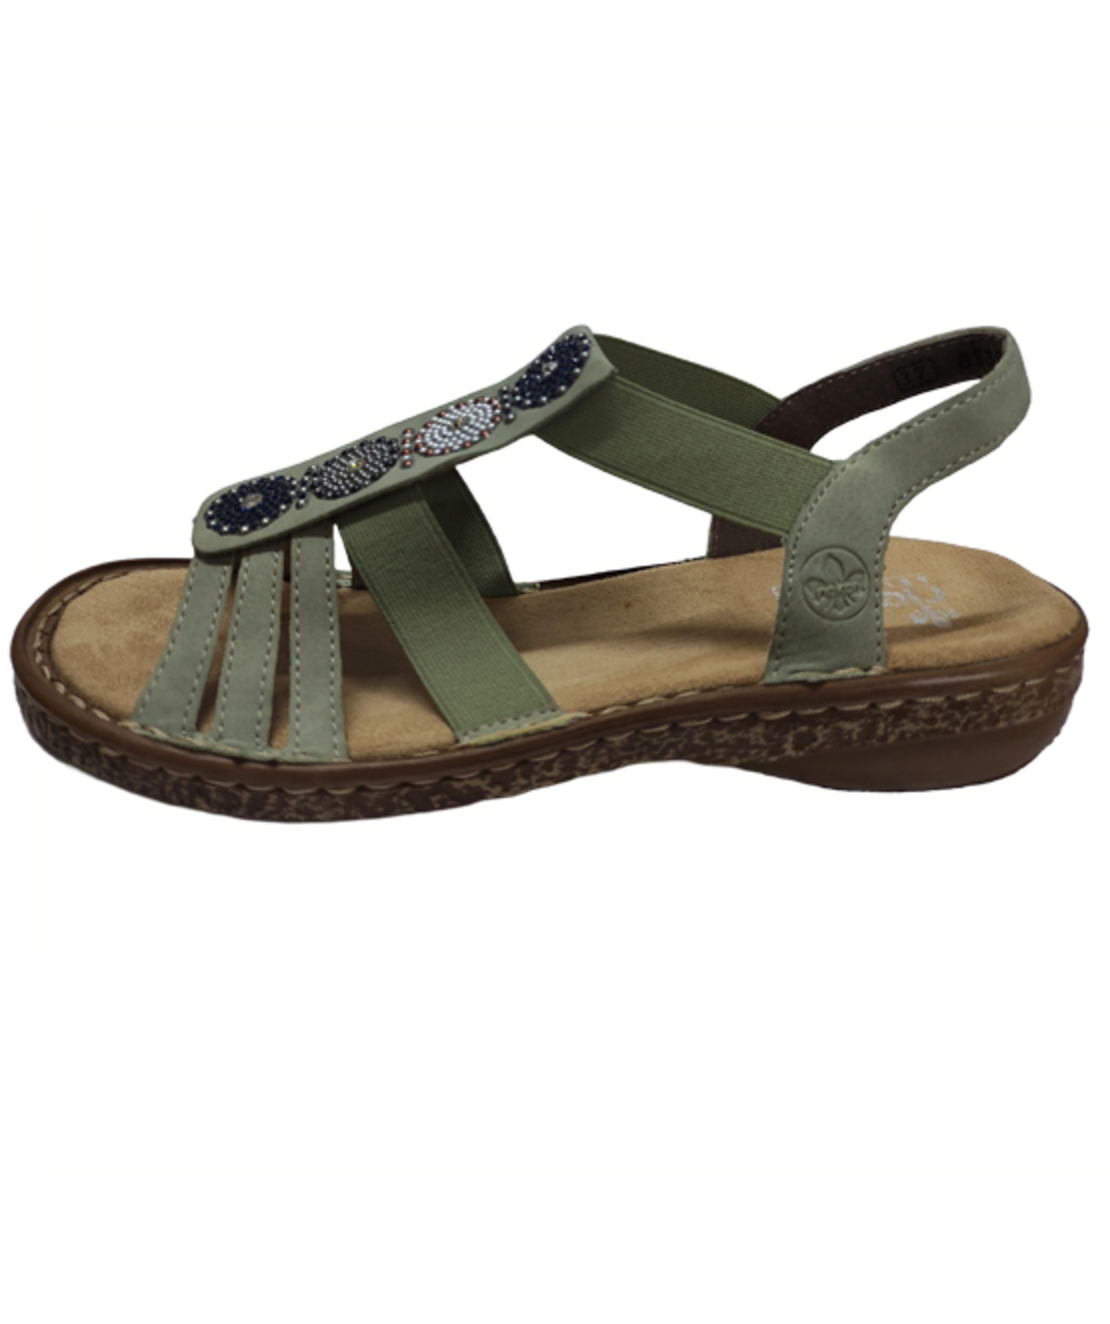 Ricker Sandals - 628G9-52 - Women